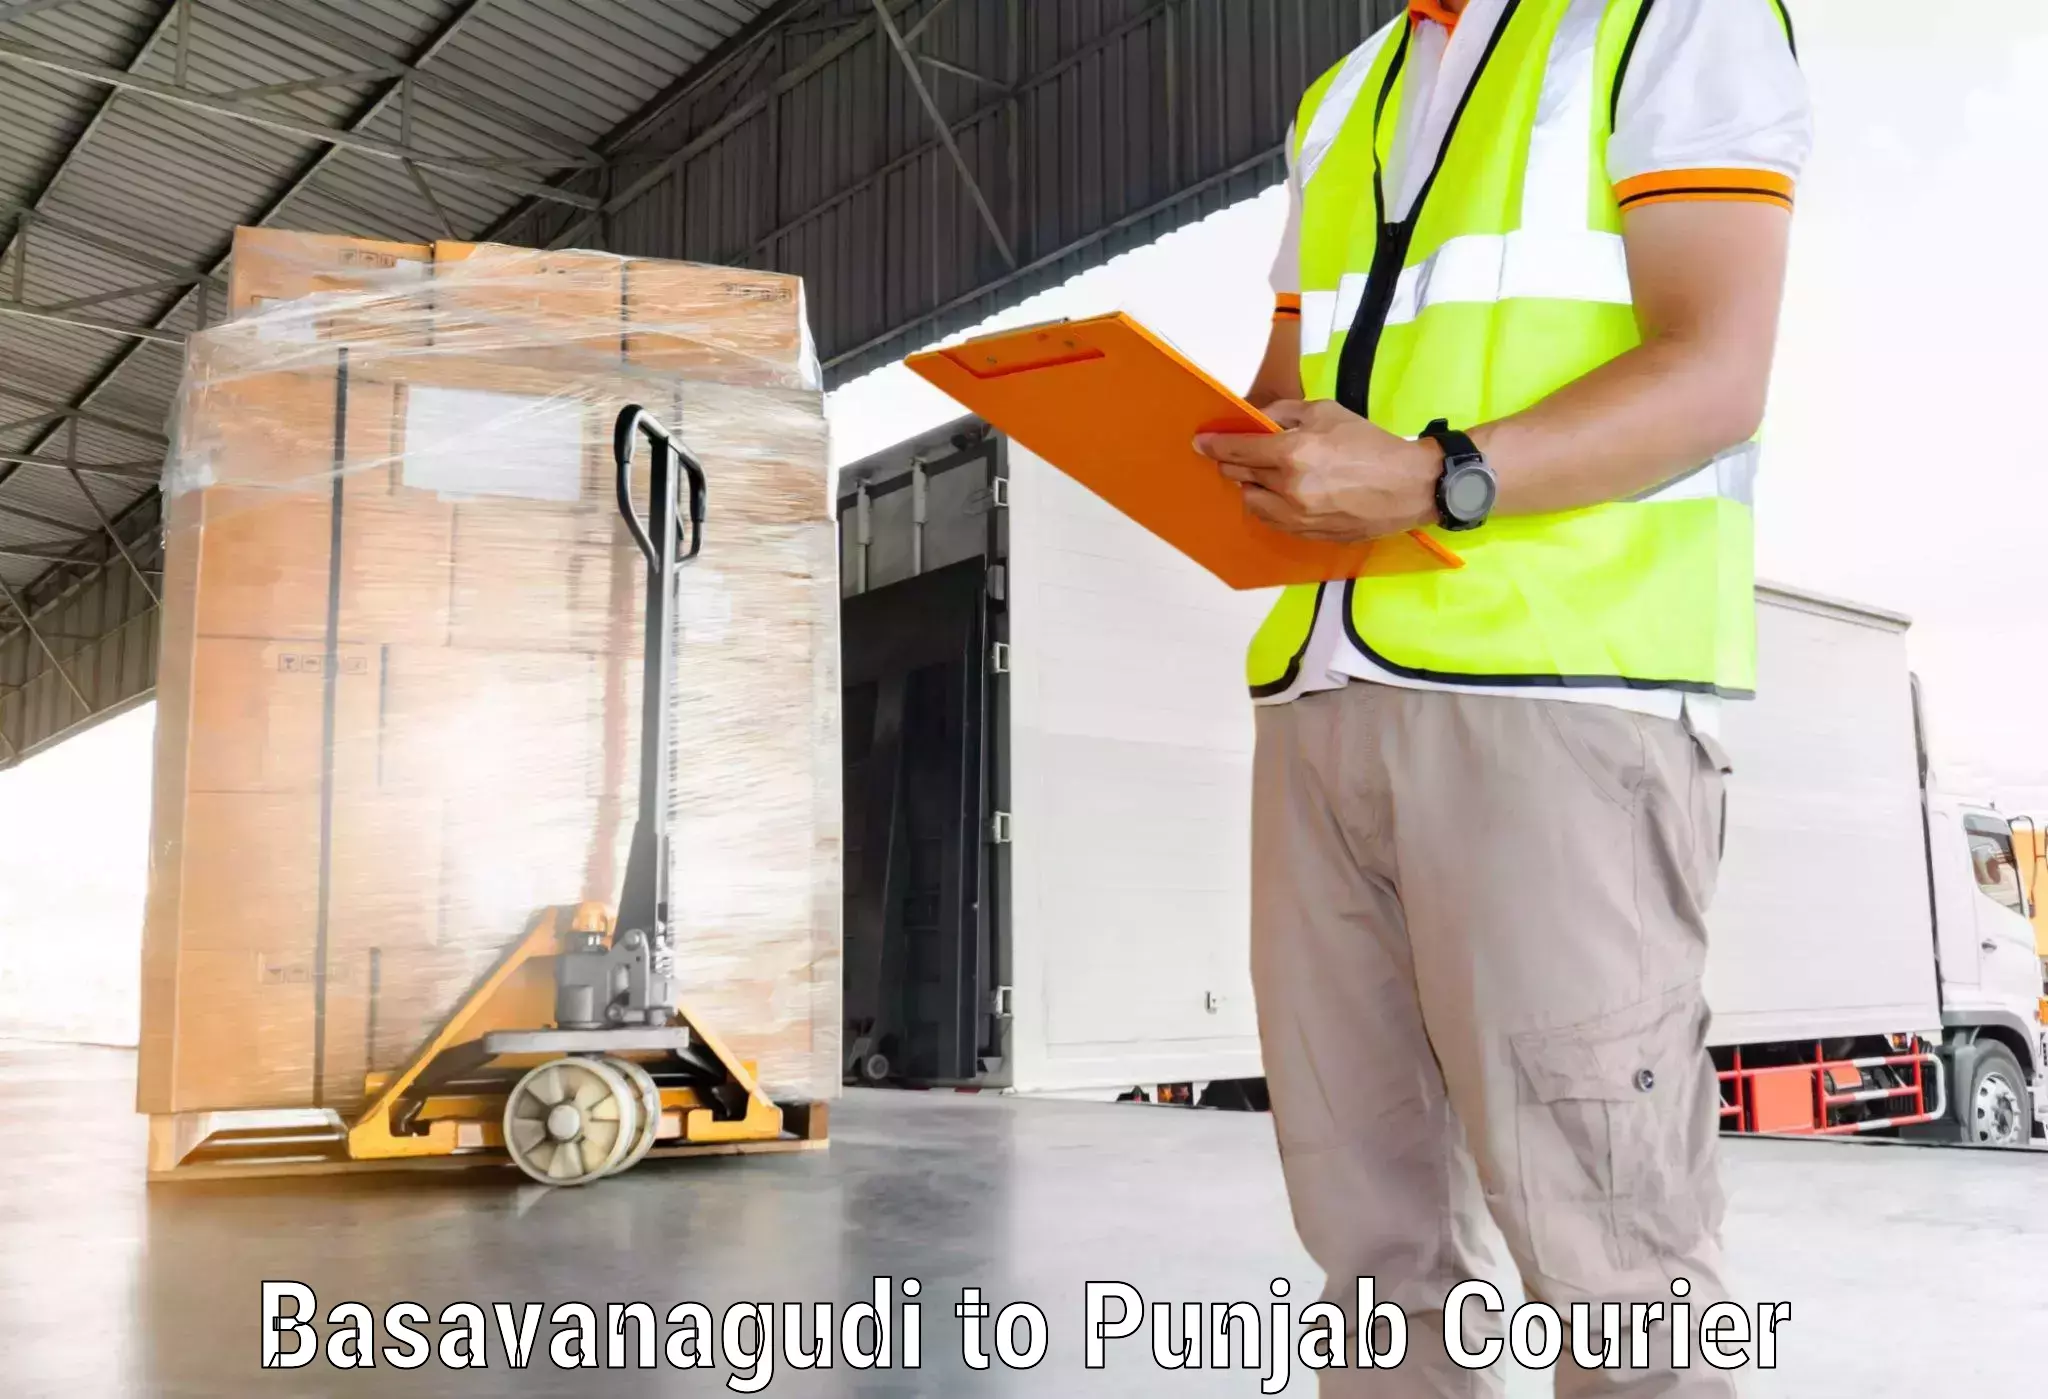 Customer-centric shipping Basavanagudi to Ajnala